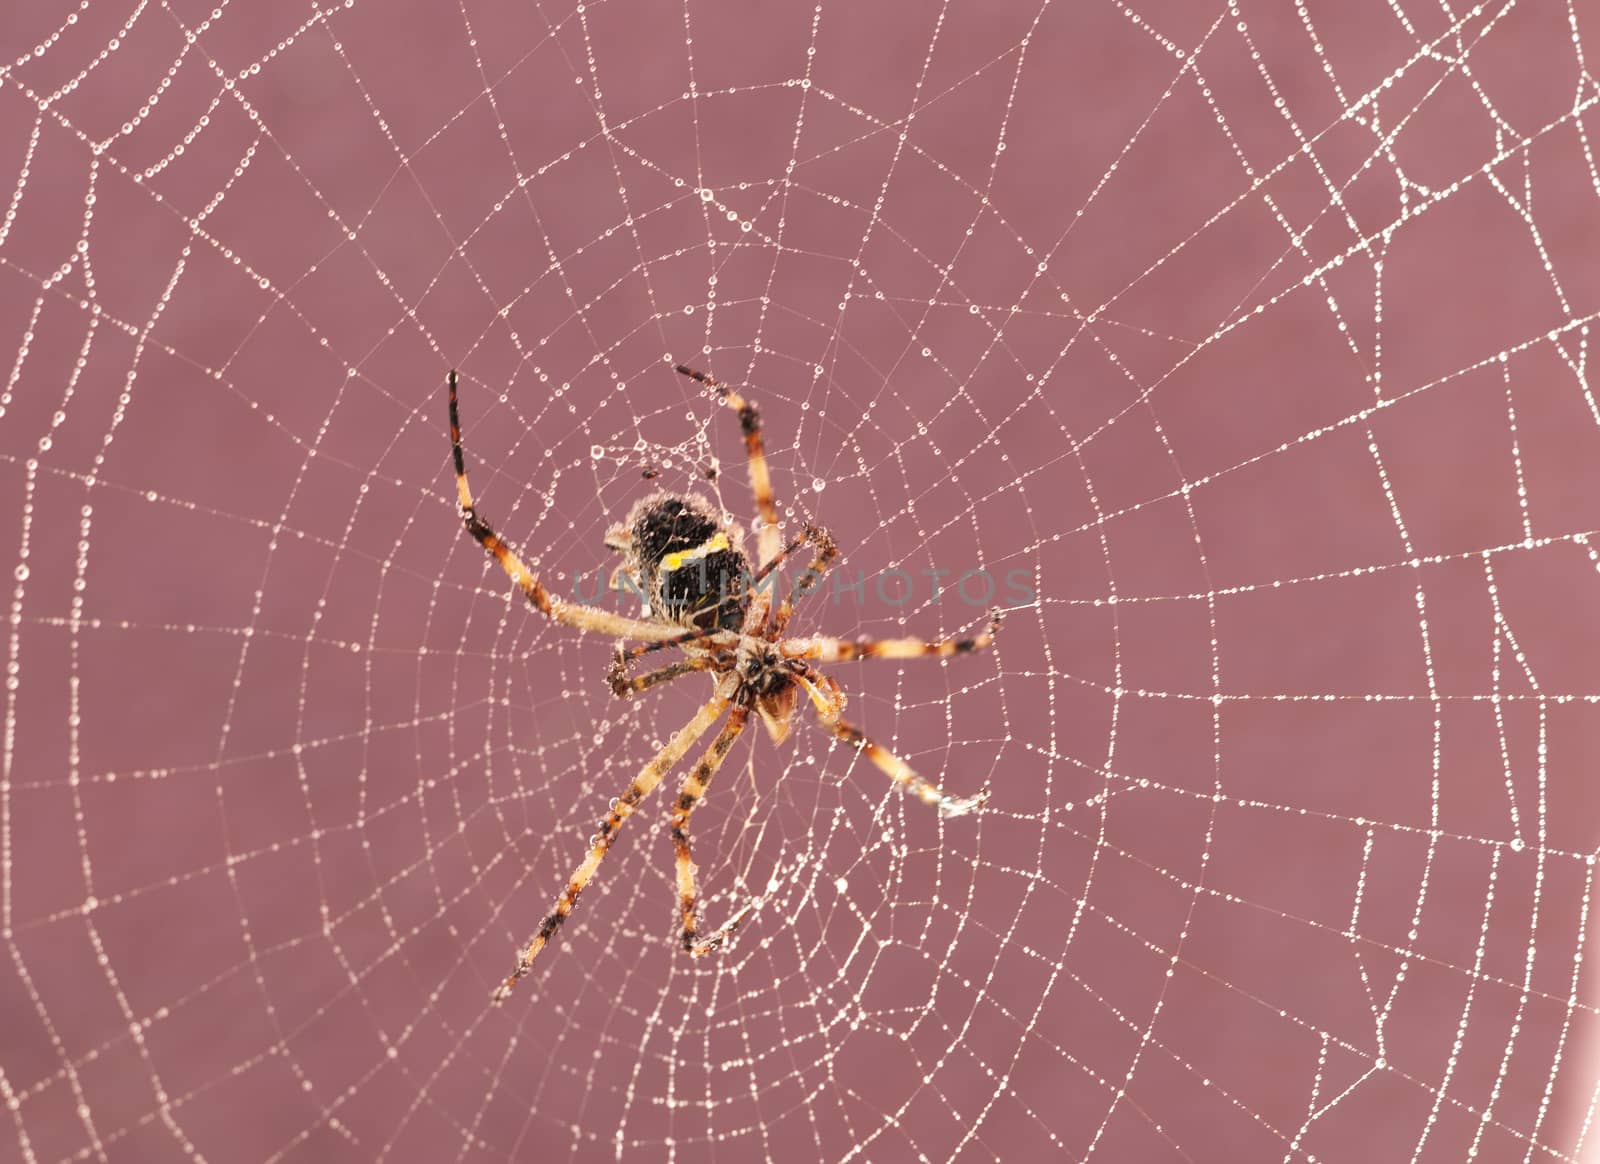 Spider on cobweb by rodrigobellizzi